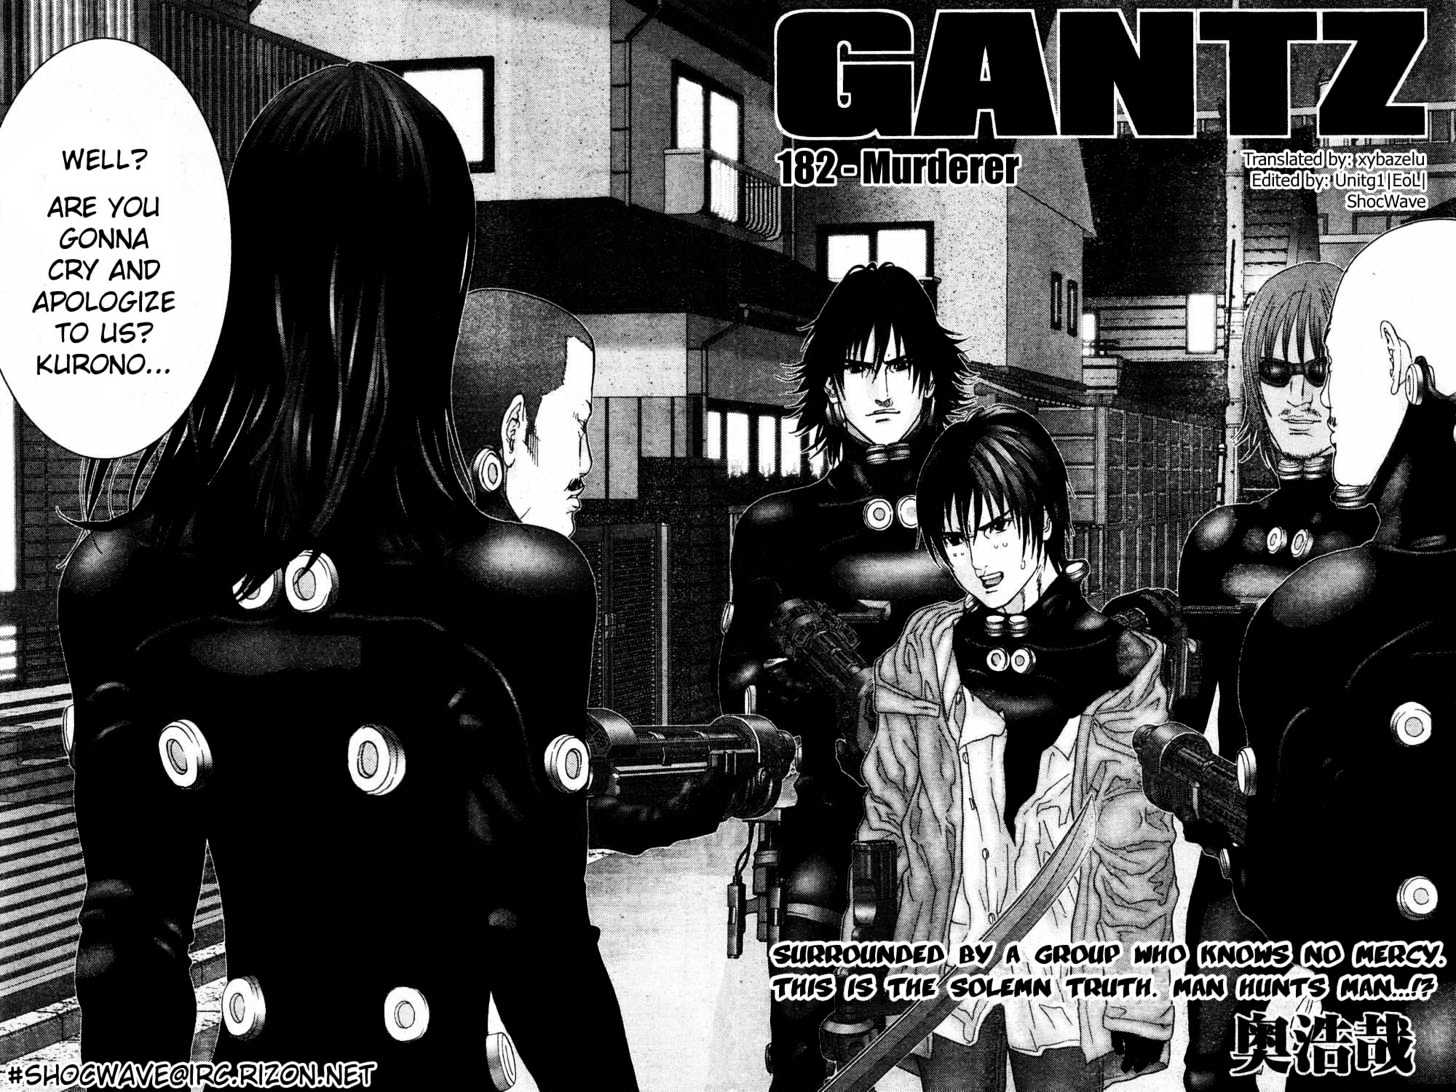 Gantz Vol.16 Chapter 182 : Murderer - Picture 2